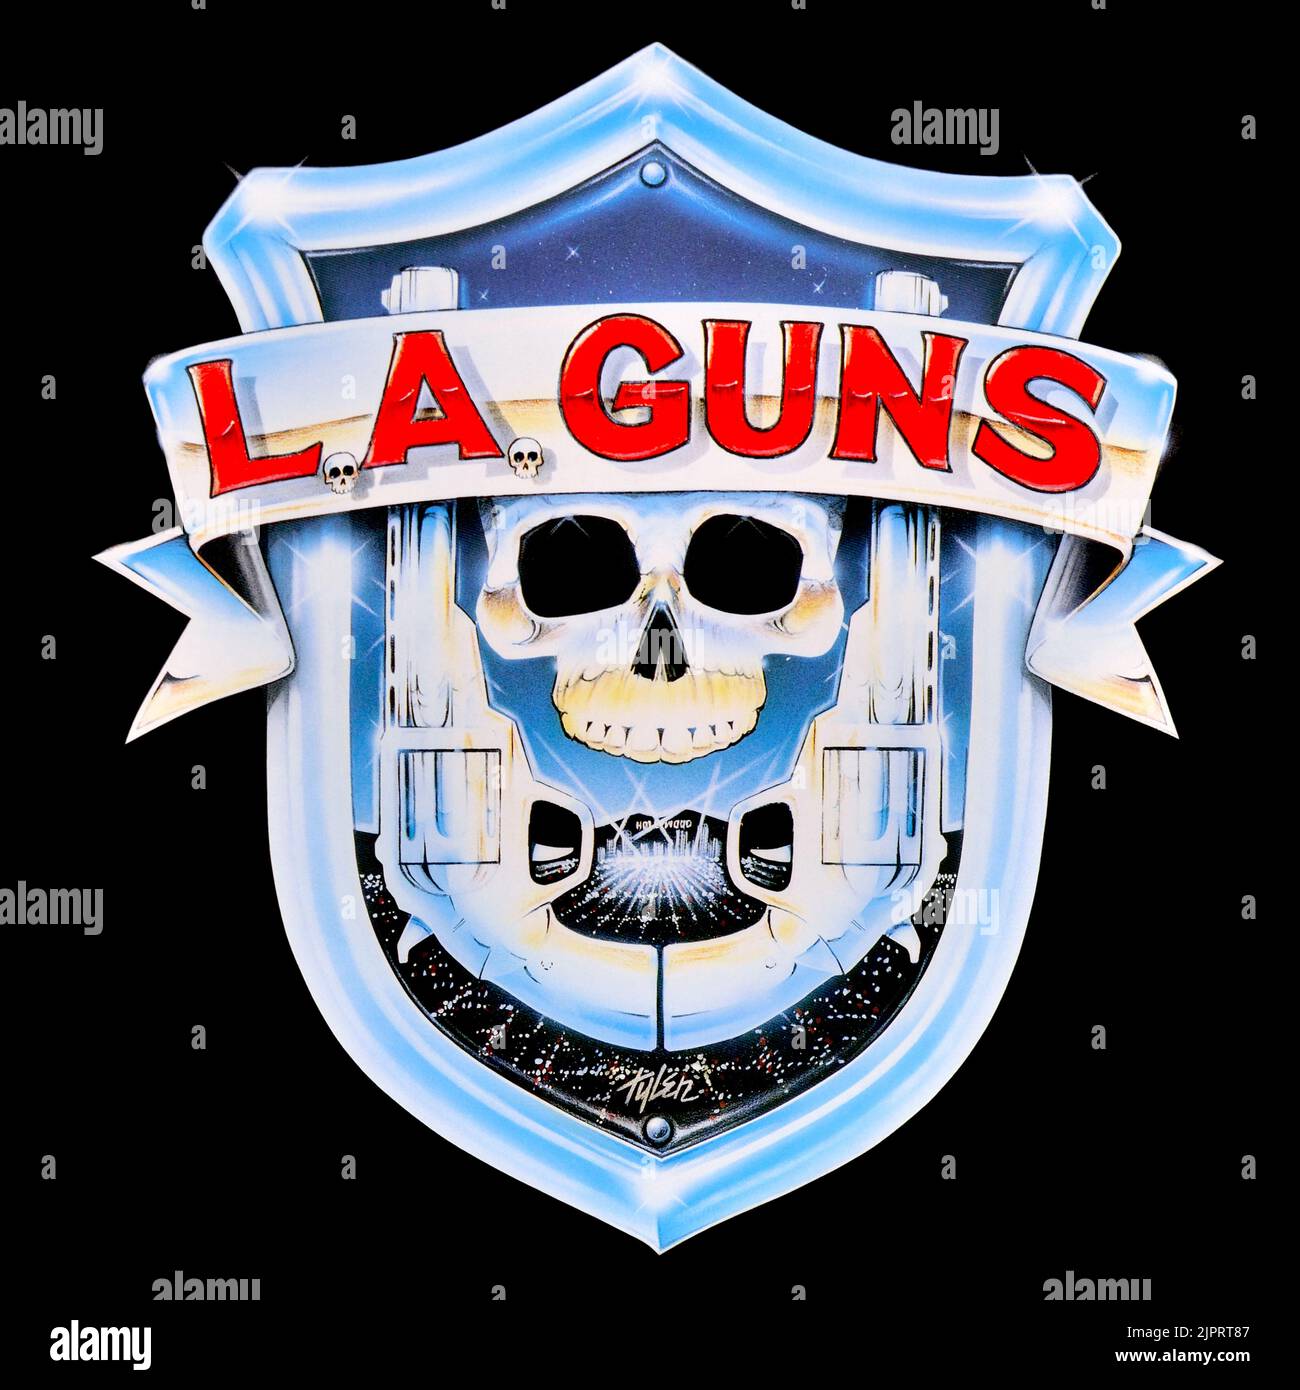 L.A. Guns - original vinyl album cover - L.A. Guns - 1988 Stock Photo